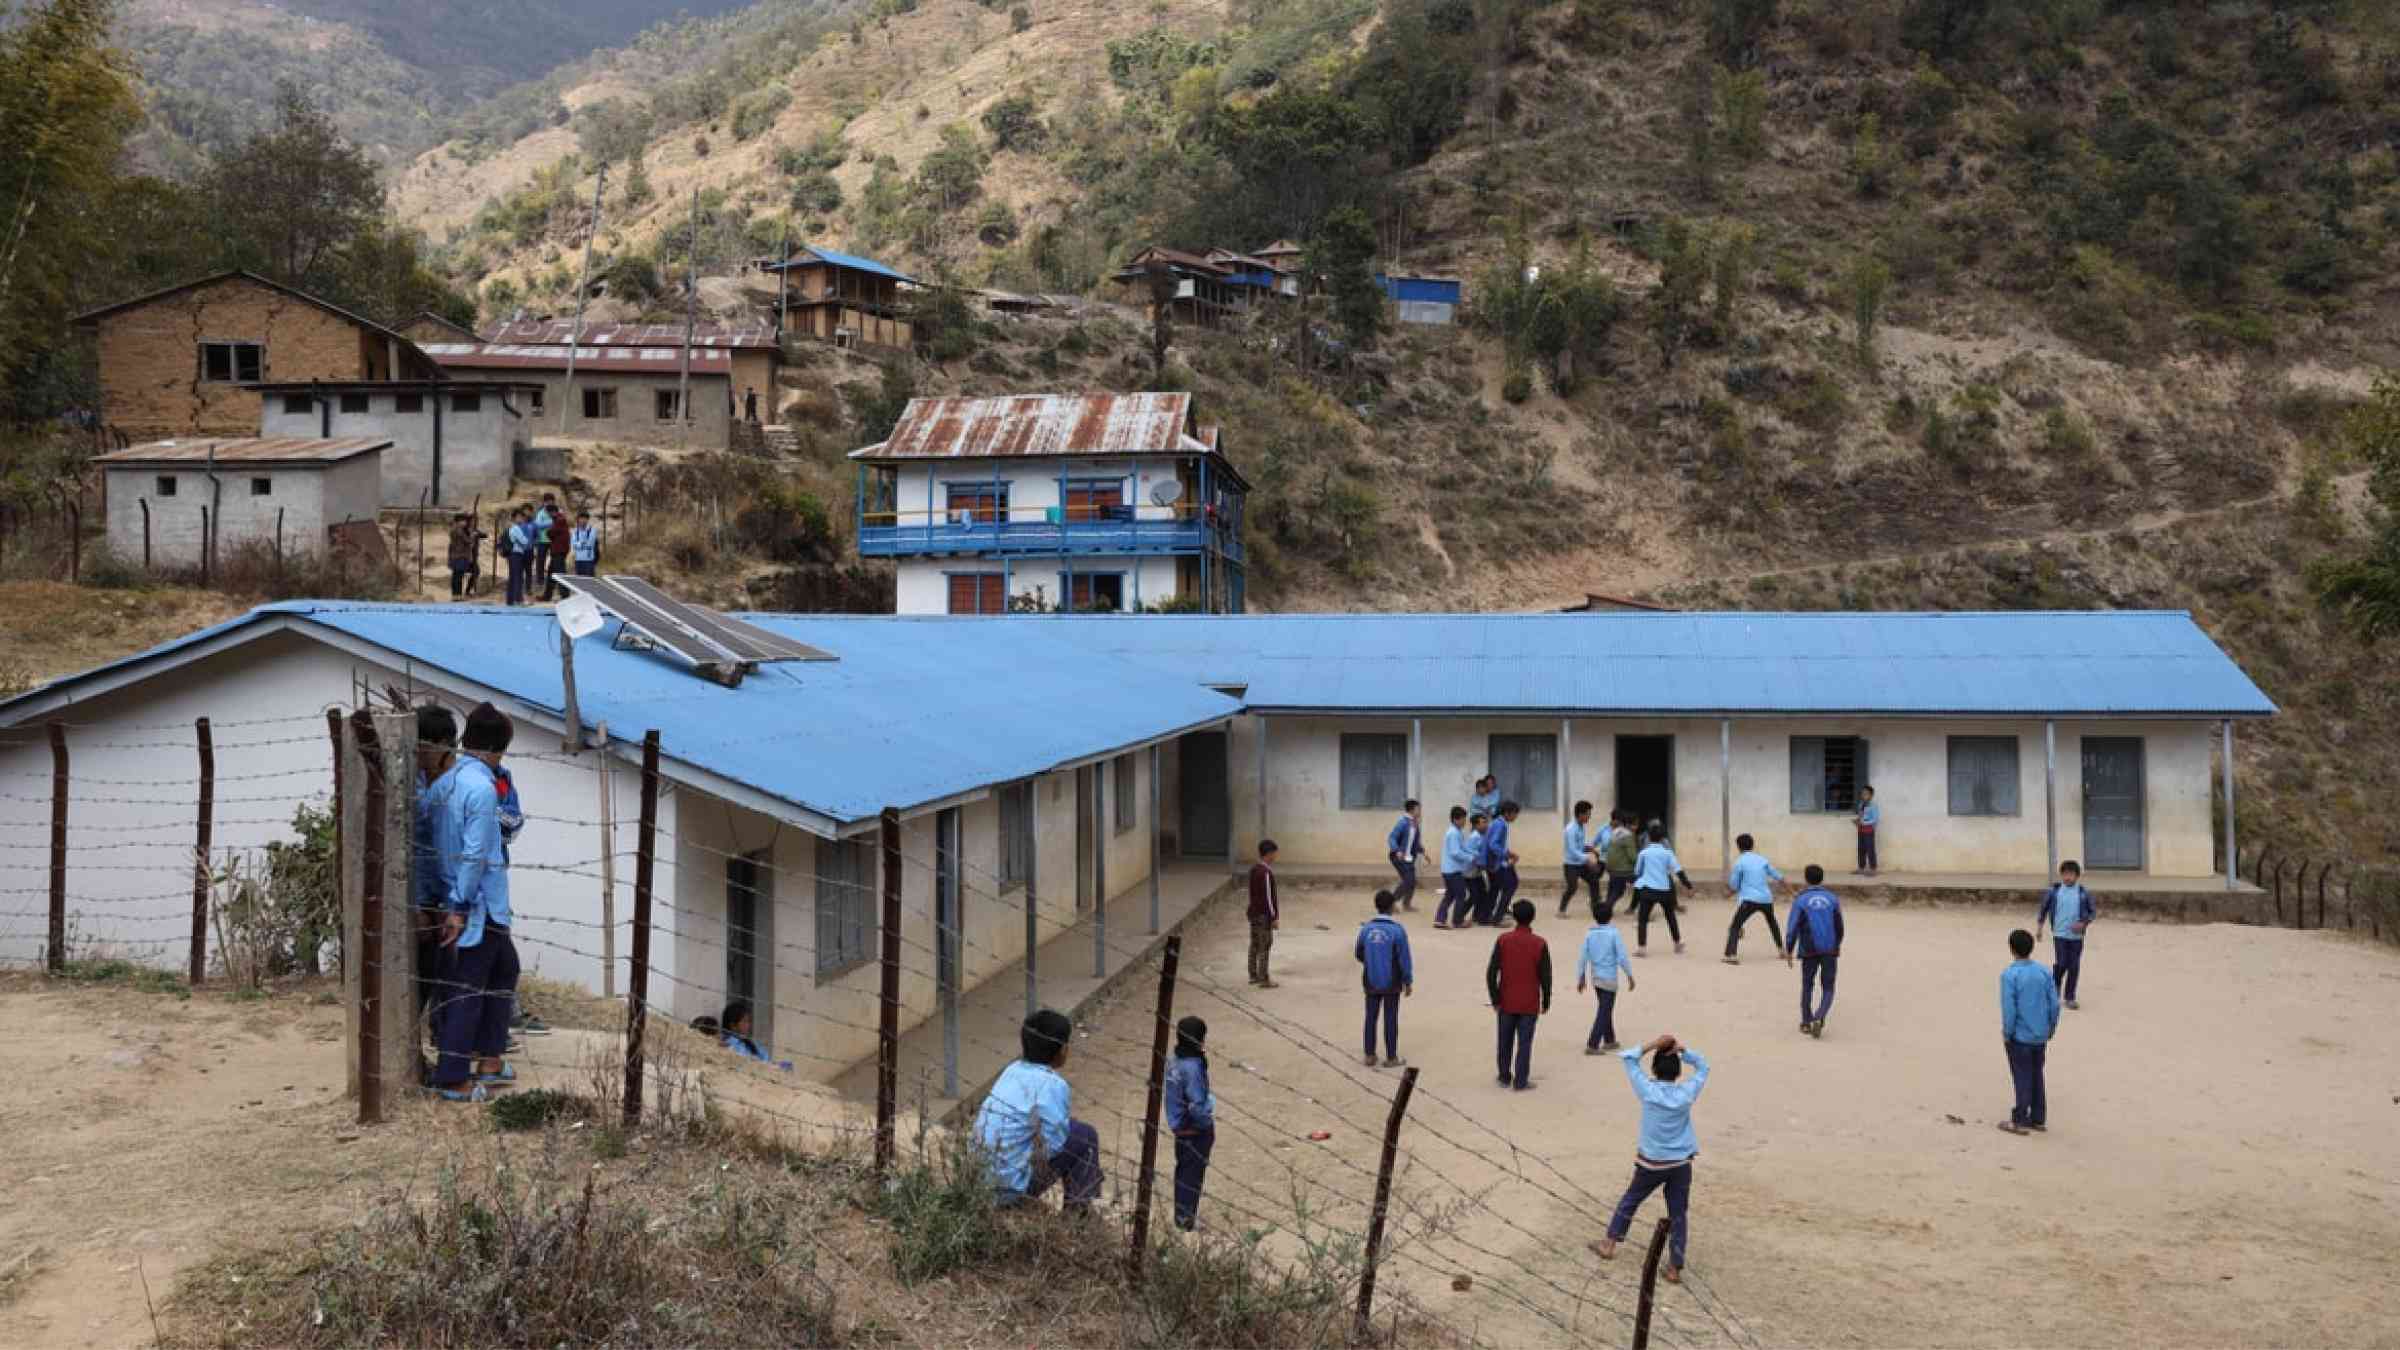 School in Nepal